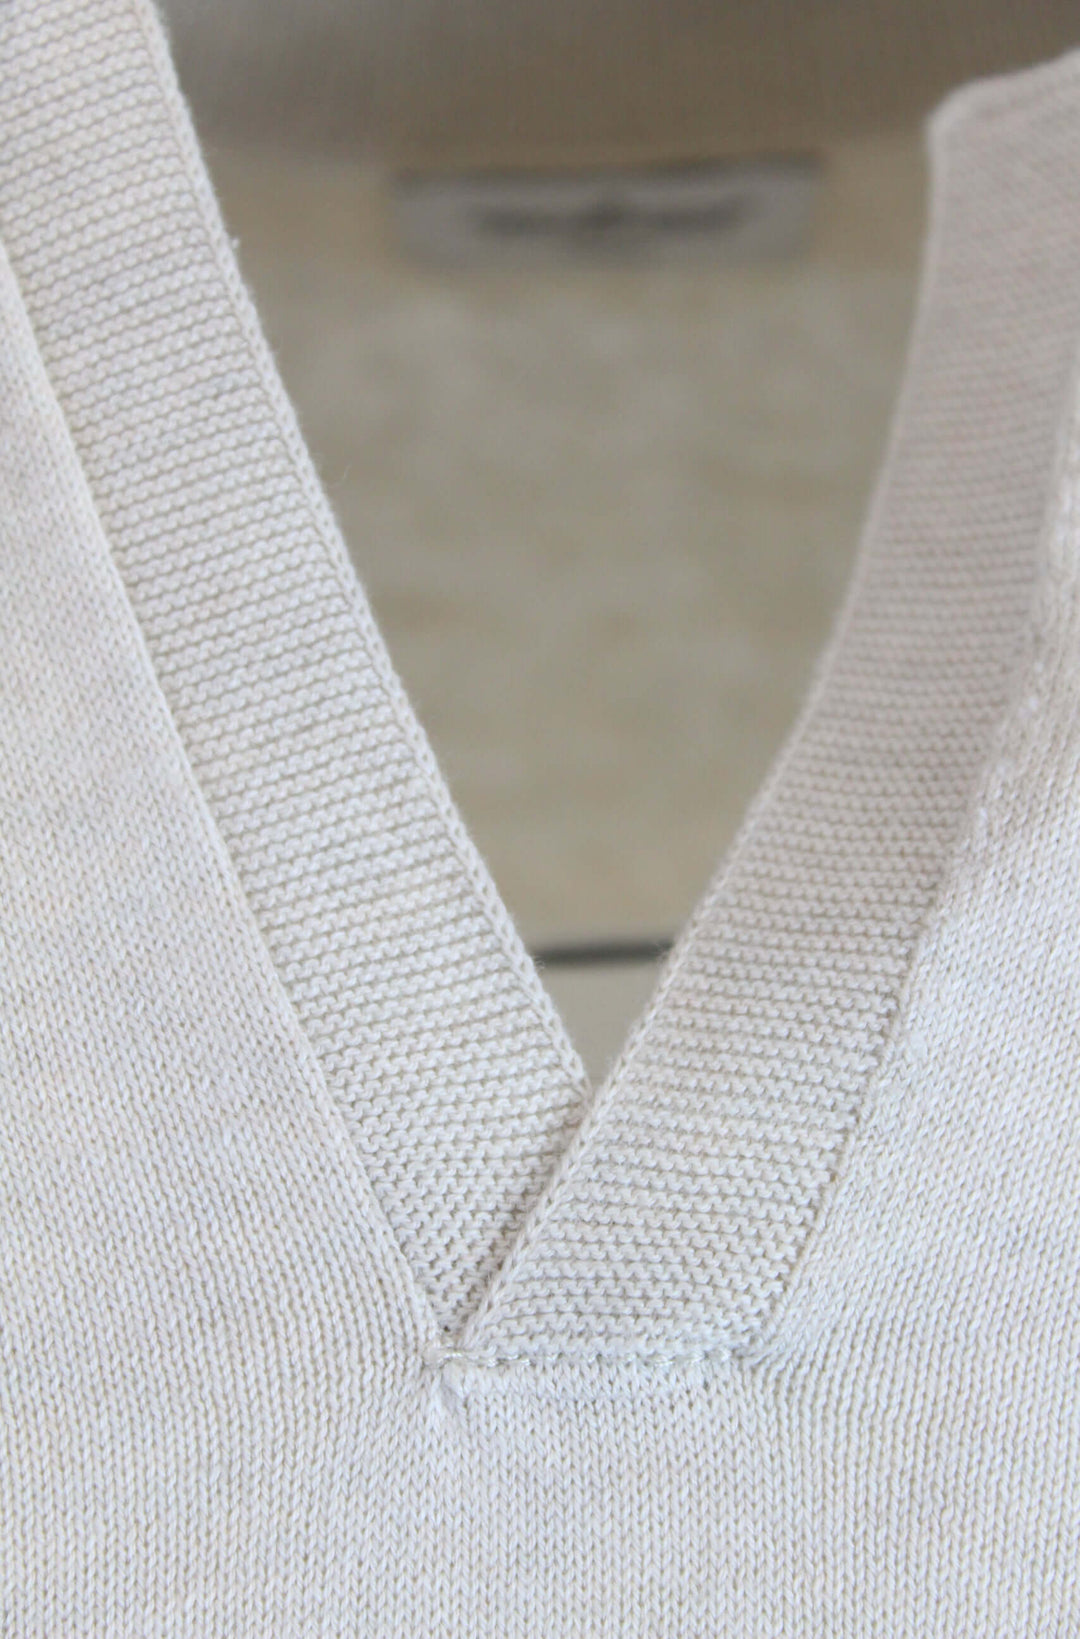 NEIL | Egyptian Cotton Long Sleeve Open Polo | COLOR: INVERNO, CACCIA, MARINE, NERO, CORALLO, MICIO, PELLE, ATLANTIDE, FIUME, BIANCO, CREMA, SOLE, TUORLO |3D Knitted by ALLTRUEIST